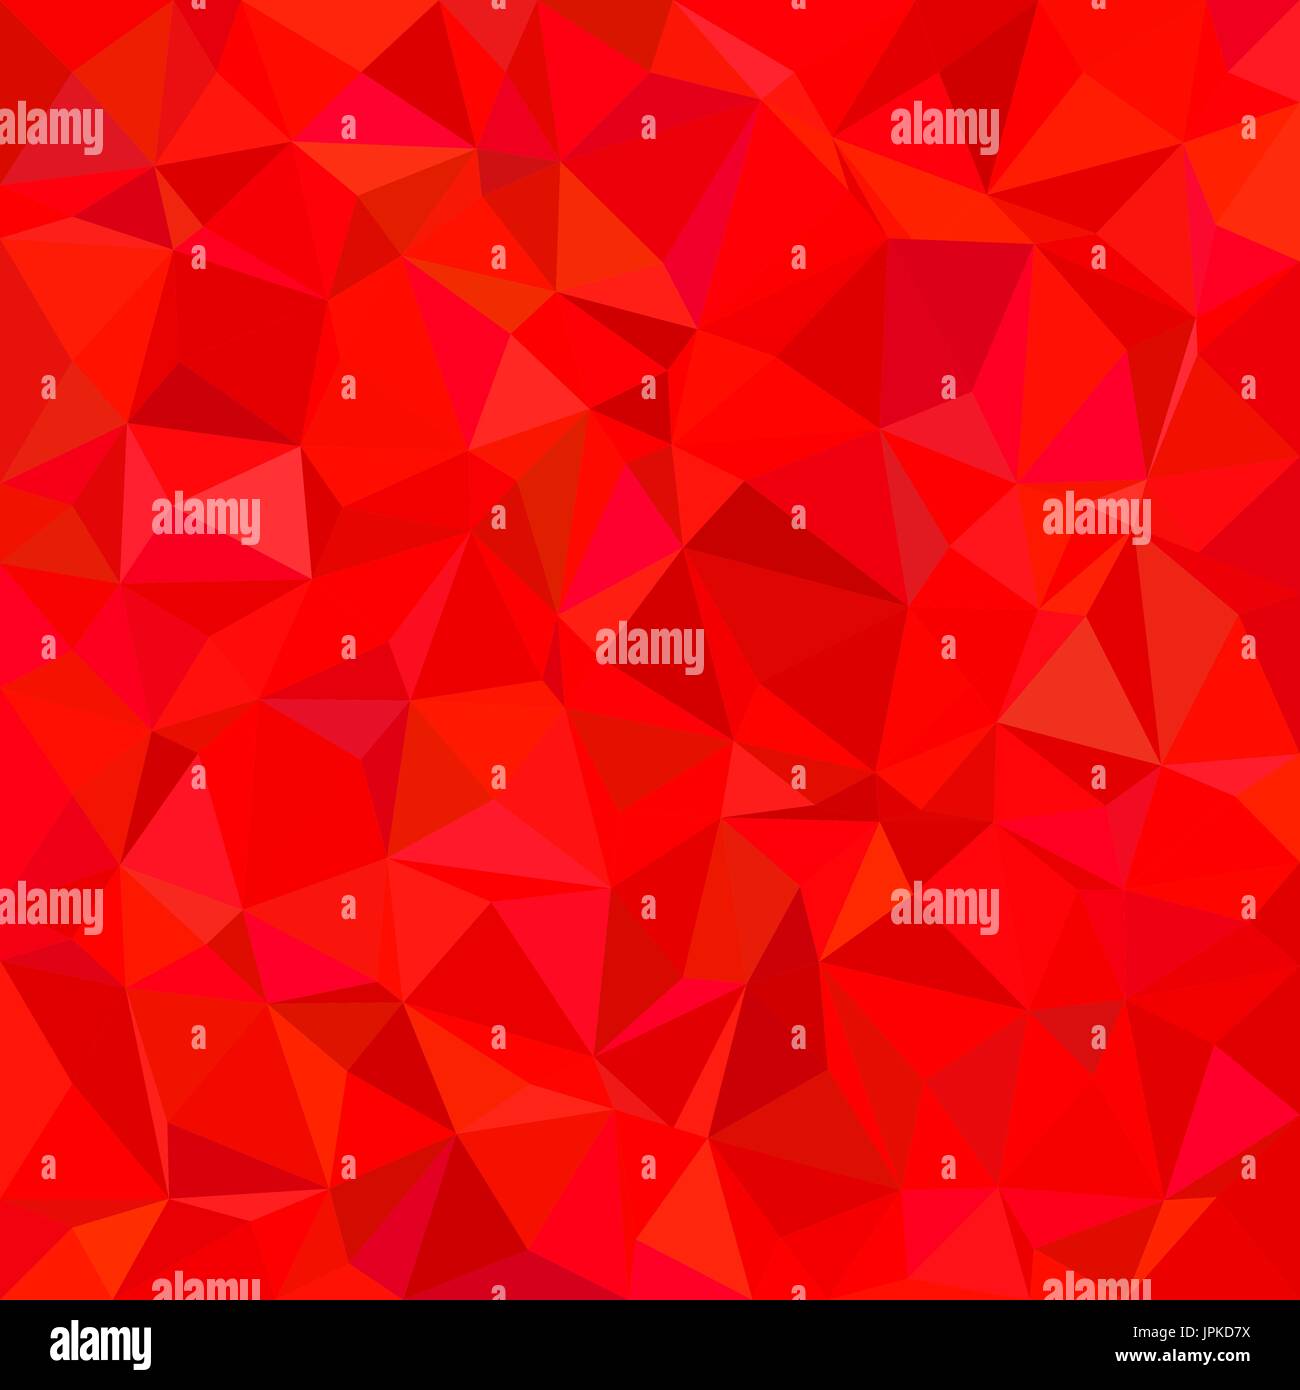 Résumé motif en mosaïque de carreaux triangle irrégulier - fond vecteur conception polygonale à partir de triangles dans les tons rouges Illustration de Vecteur